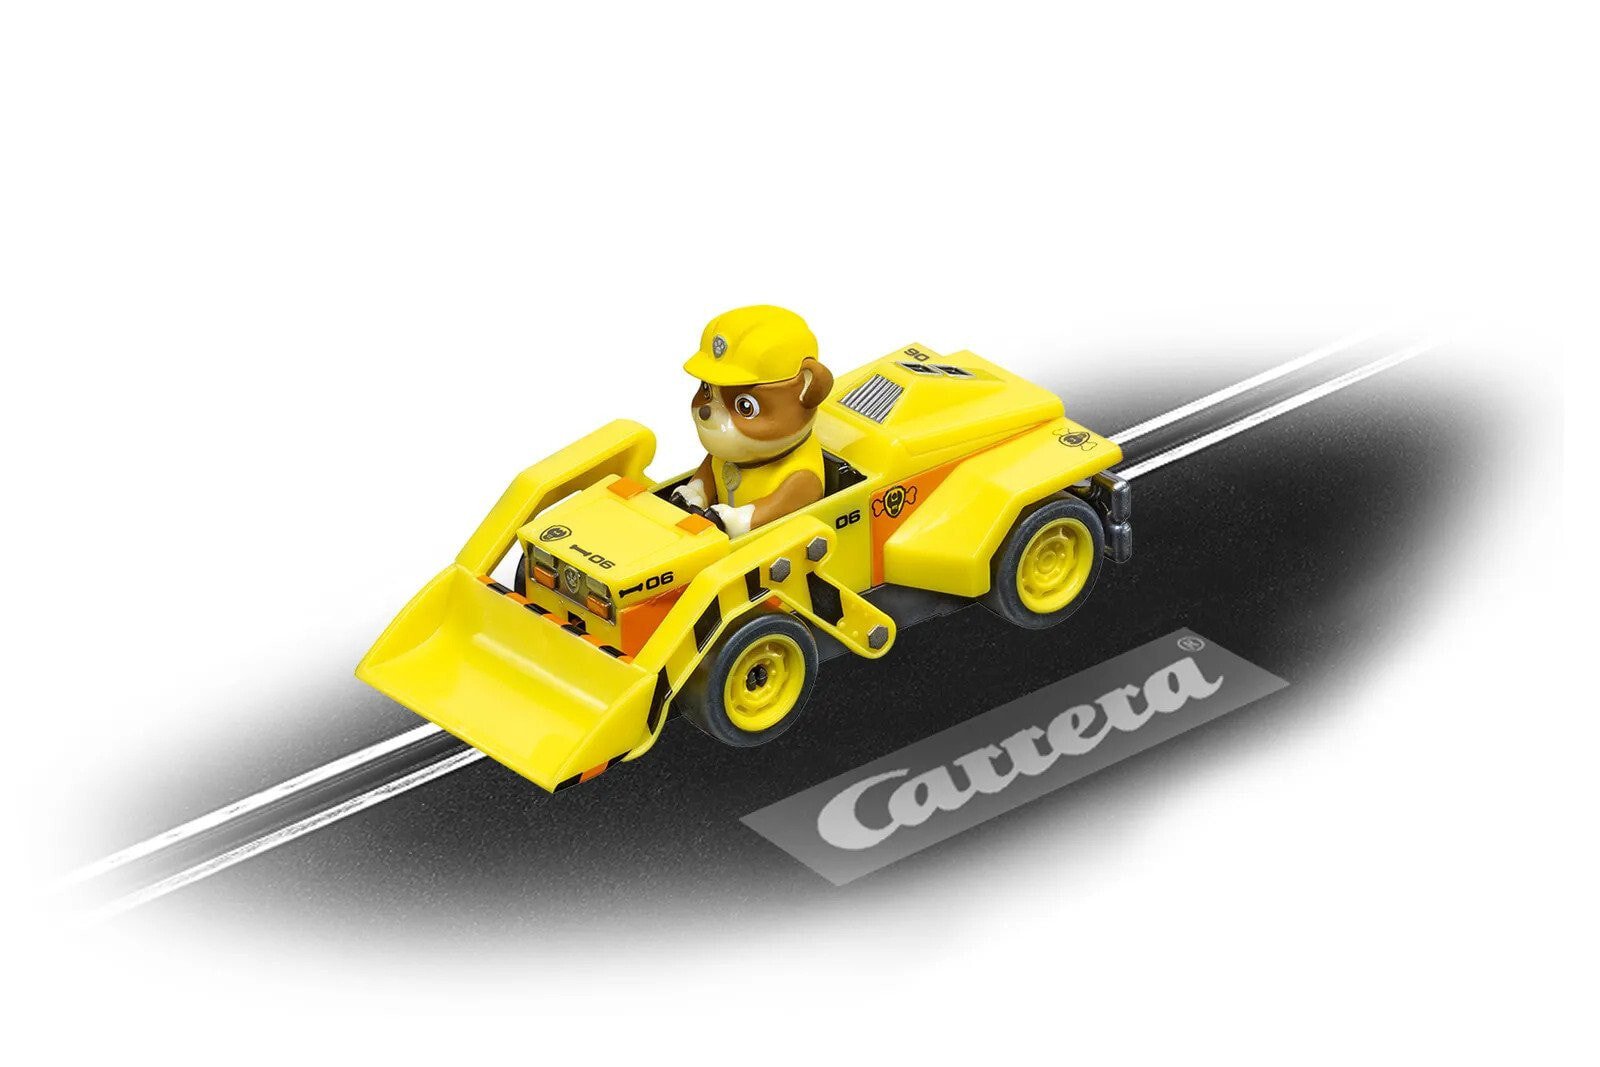 Игрушечная машинка и техника для мальчиков Carrera Paw Patrol - Rubble, Car, Paw Patrol, Indoor/outdoor, 8 yr(s), Yellow